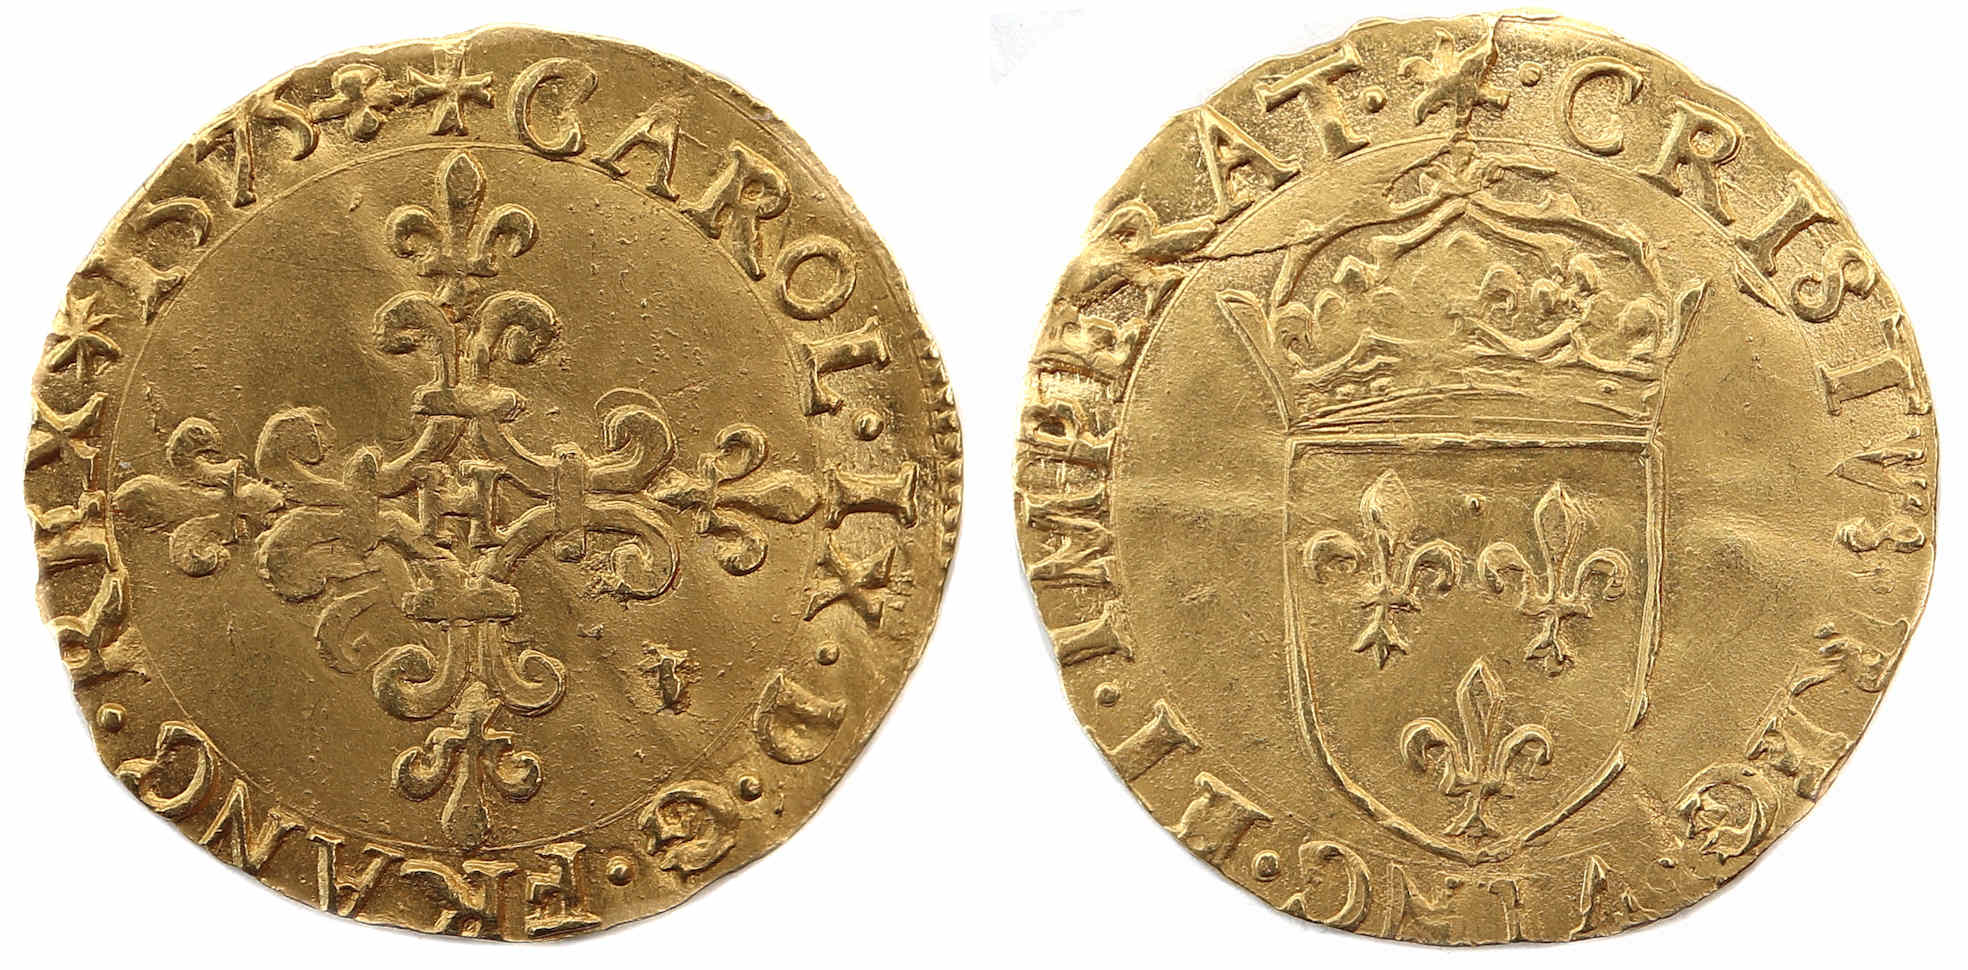 HENRI II ECU OR CHARLES IX ECU OR 1575 LA ROCHELLE